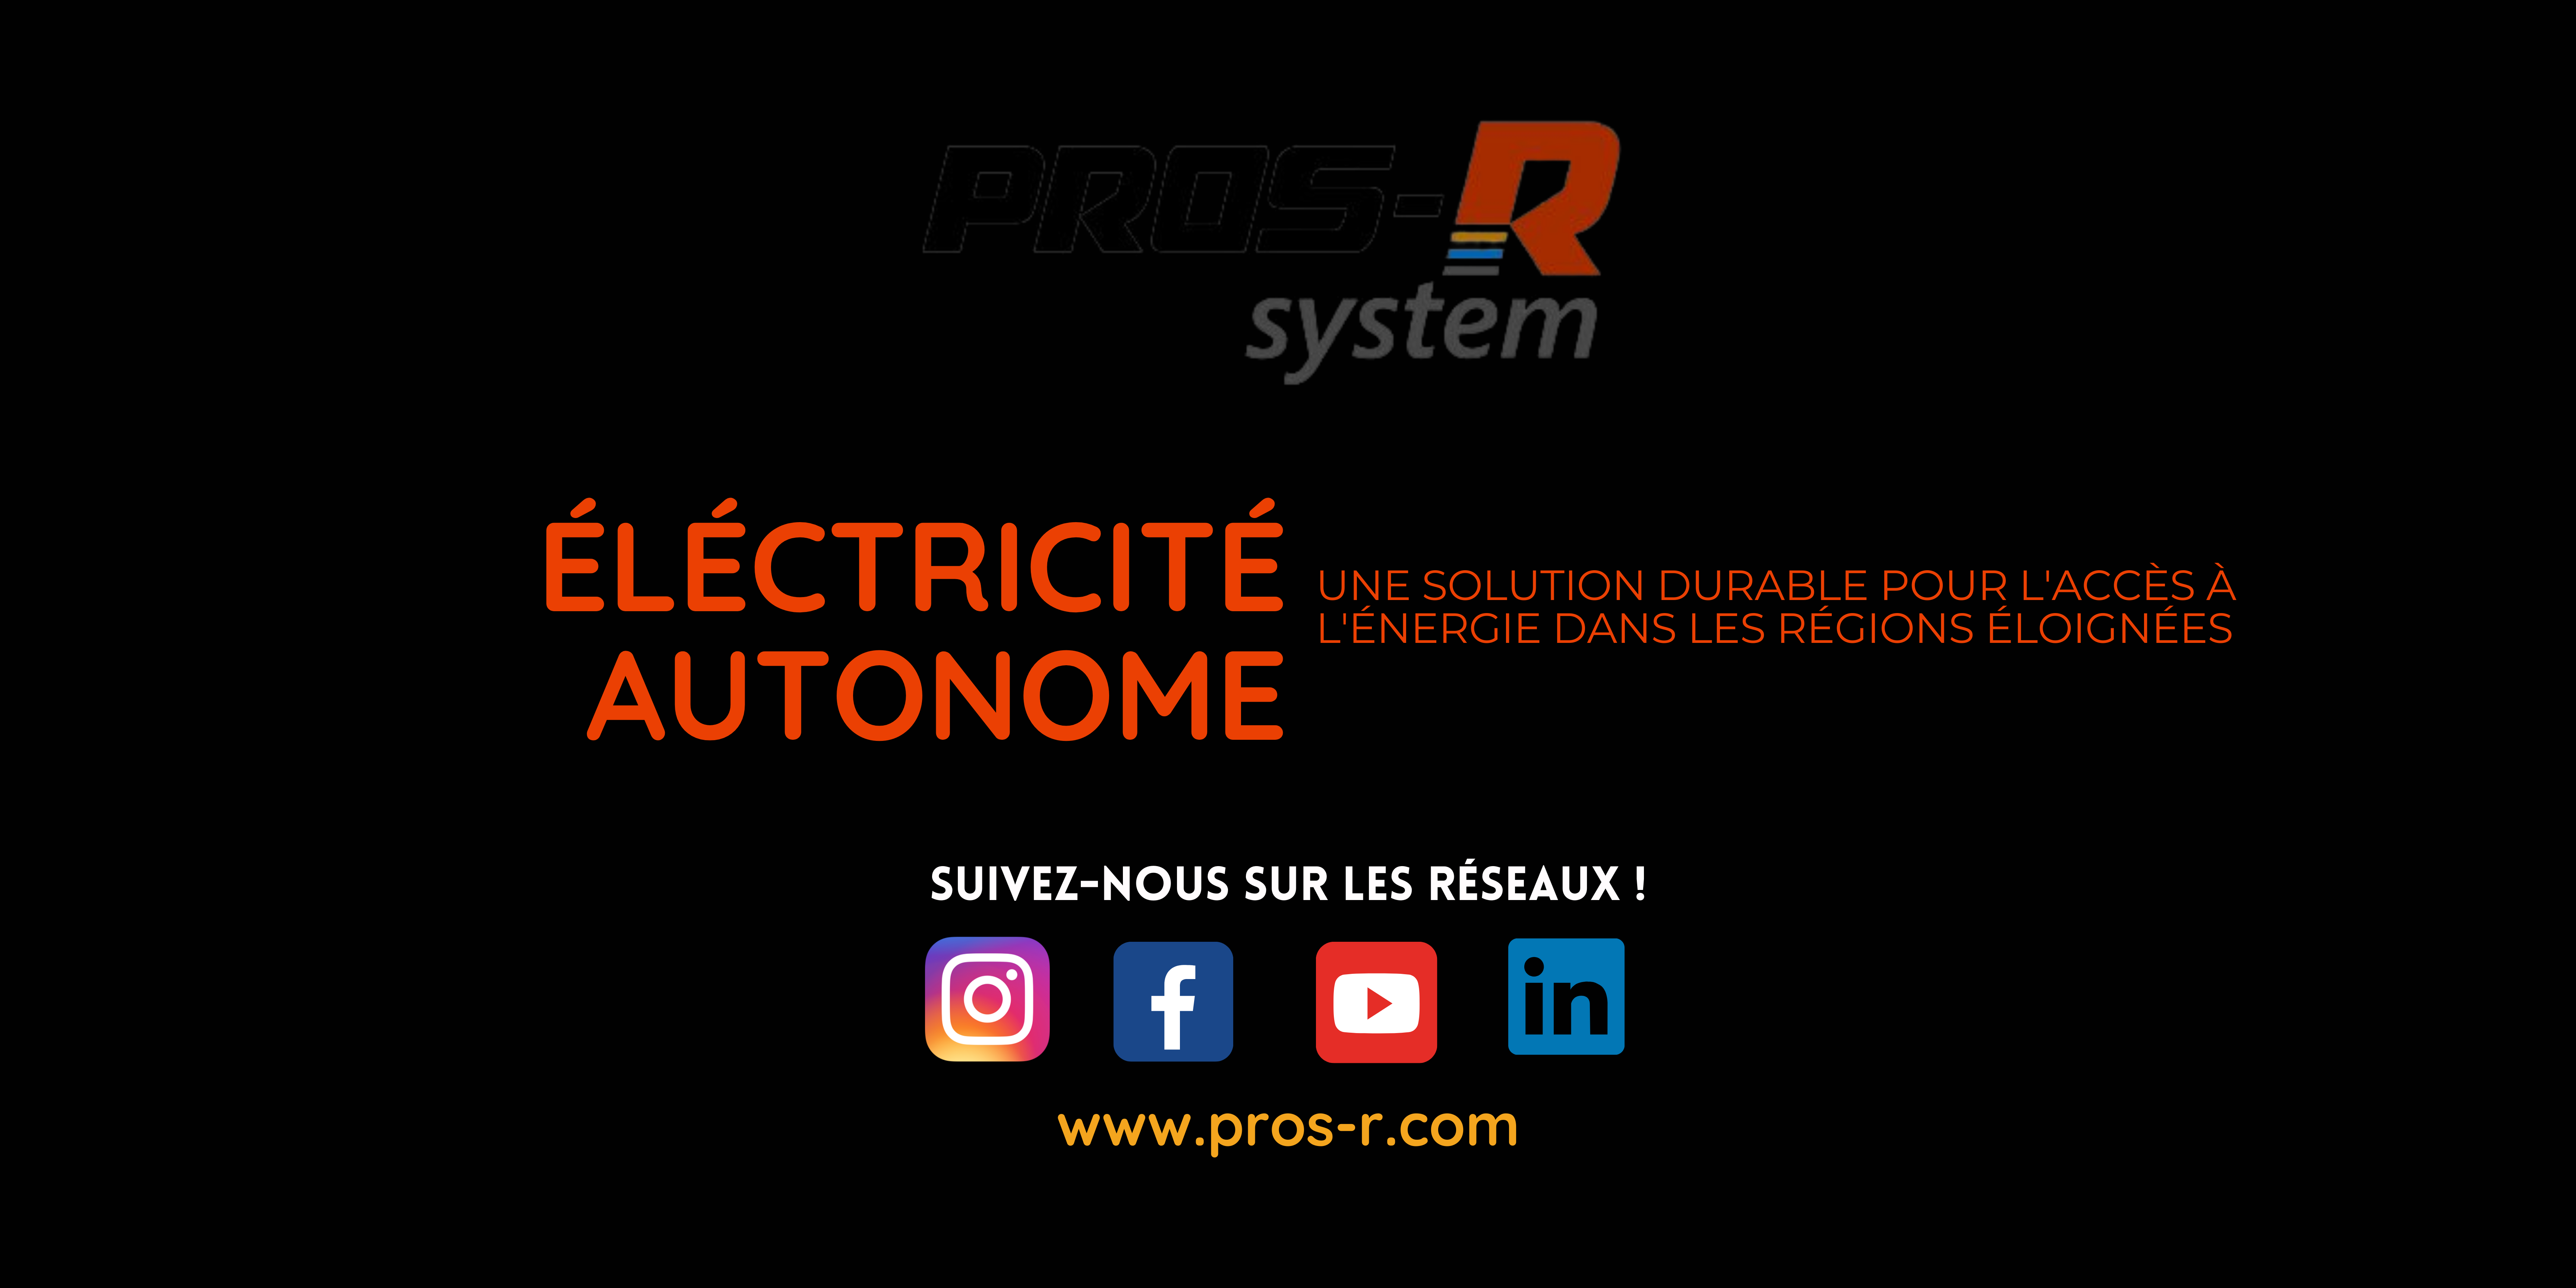 L'électricité autonome, une solution durable pour les régions éloignées PROS-R System